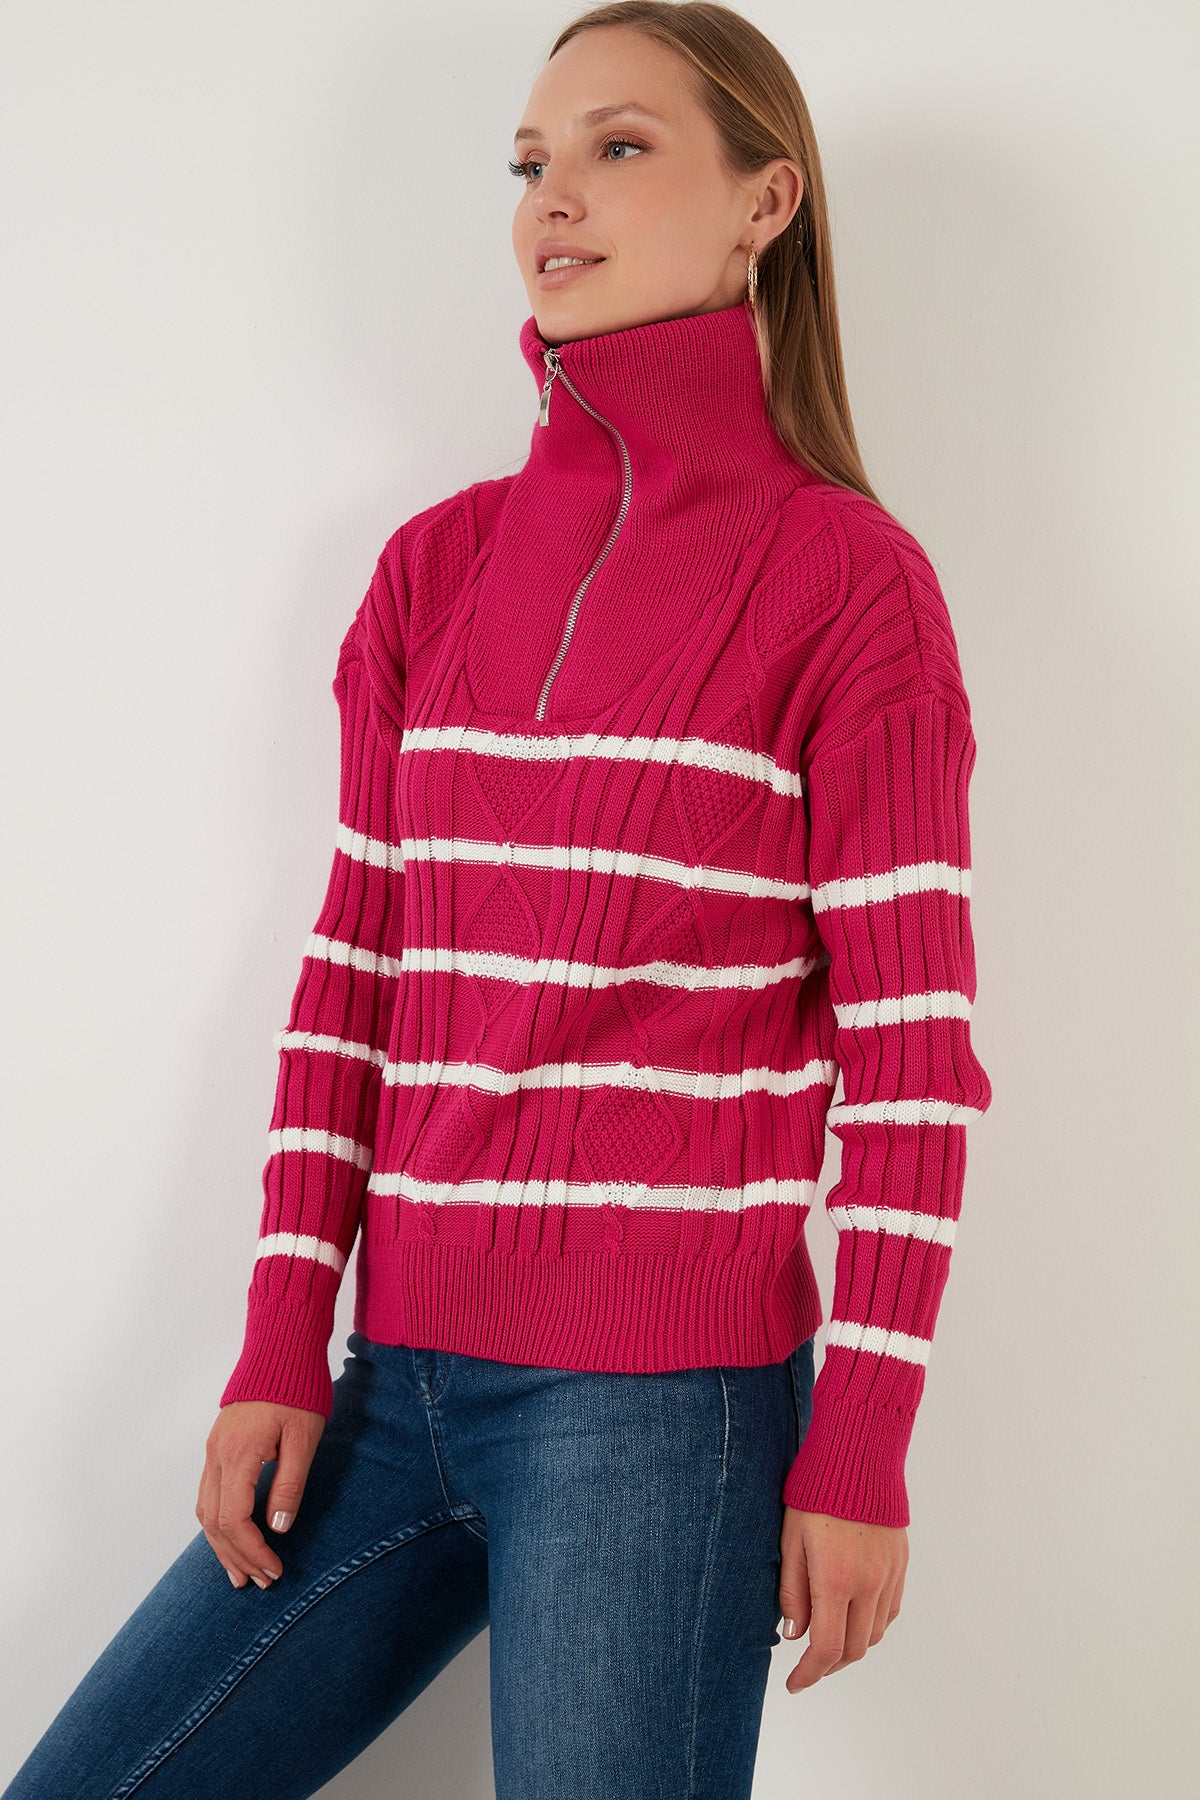 Lela Striped Zippered Turtleneck Knitted Knitwear Women's Sweater - Fuchsia-Ecru